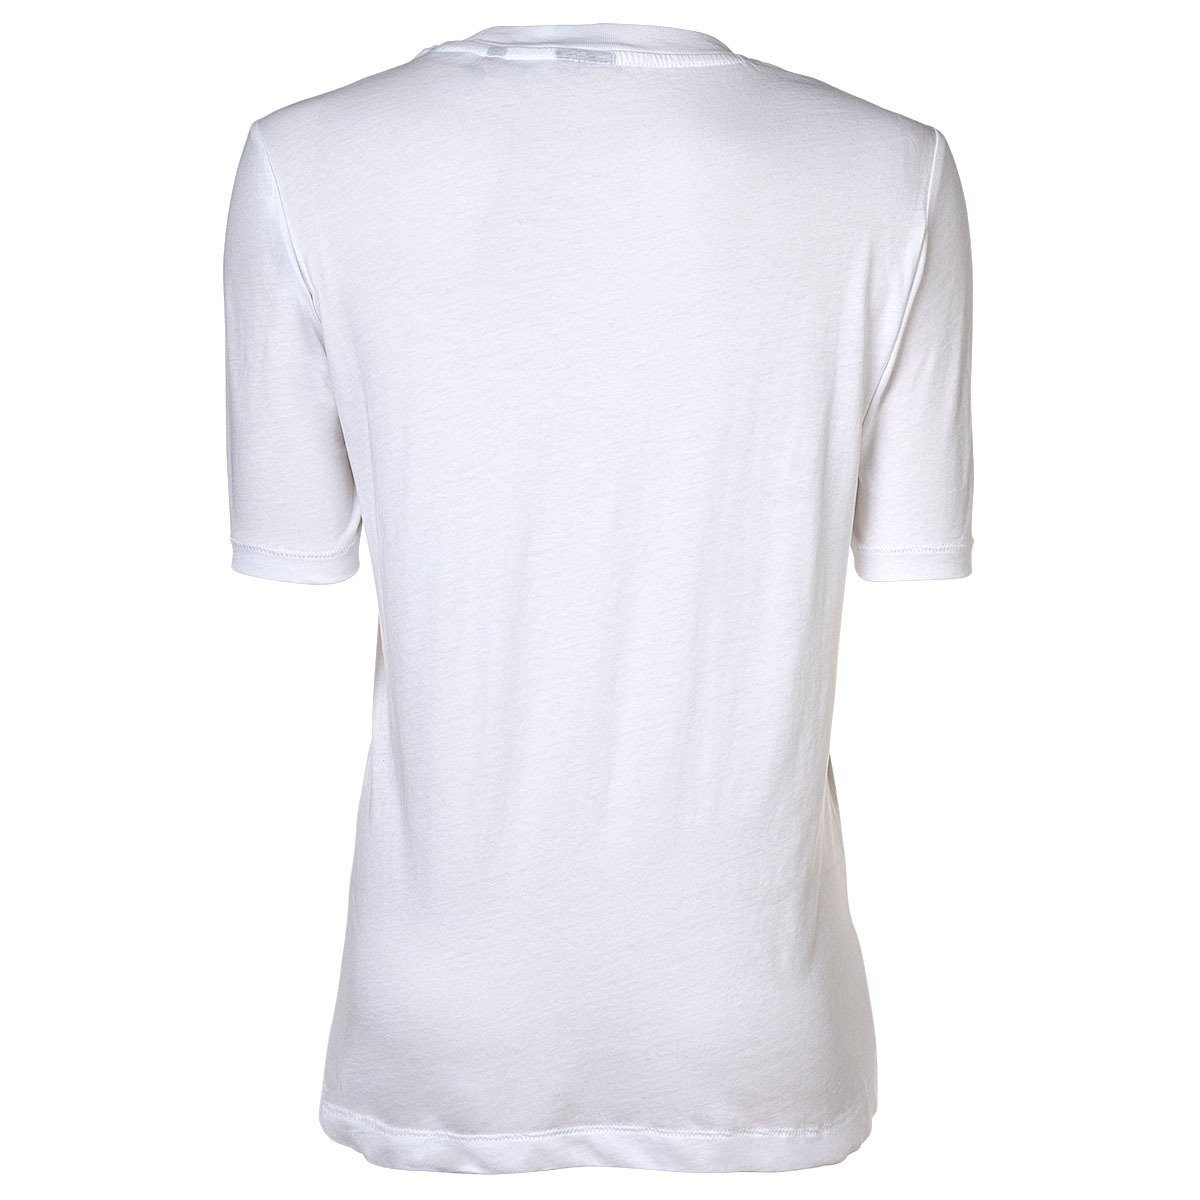 Regular T-Shirt Weiß Damen RAW G-Star - Originals Label T-Shirt Fit